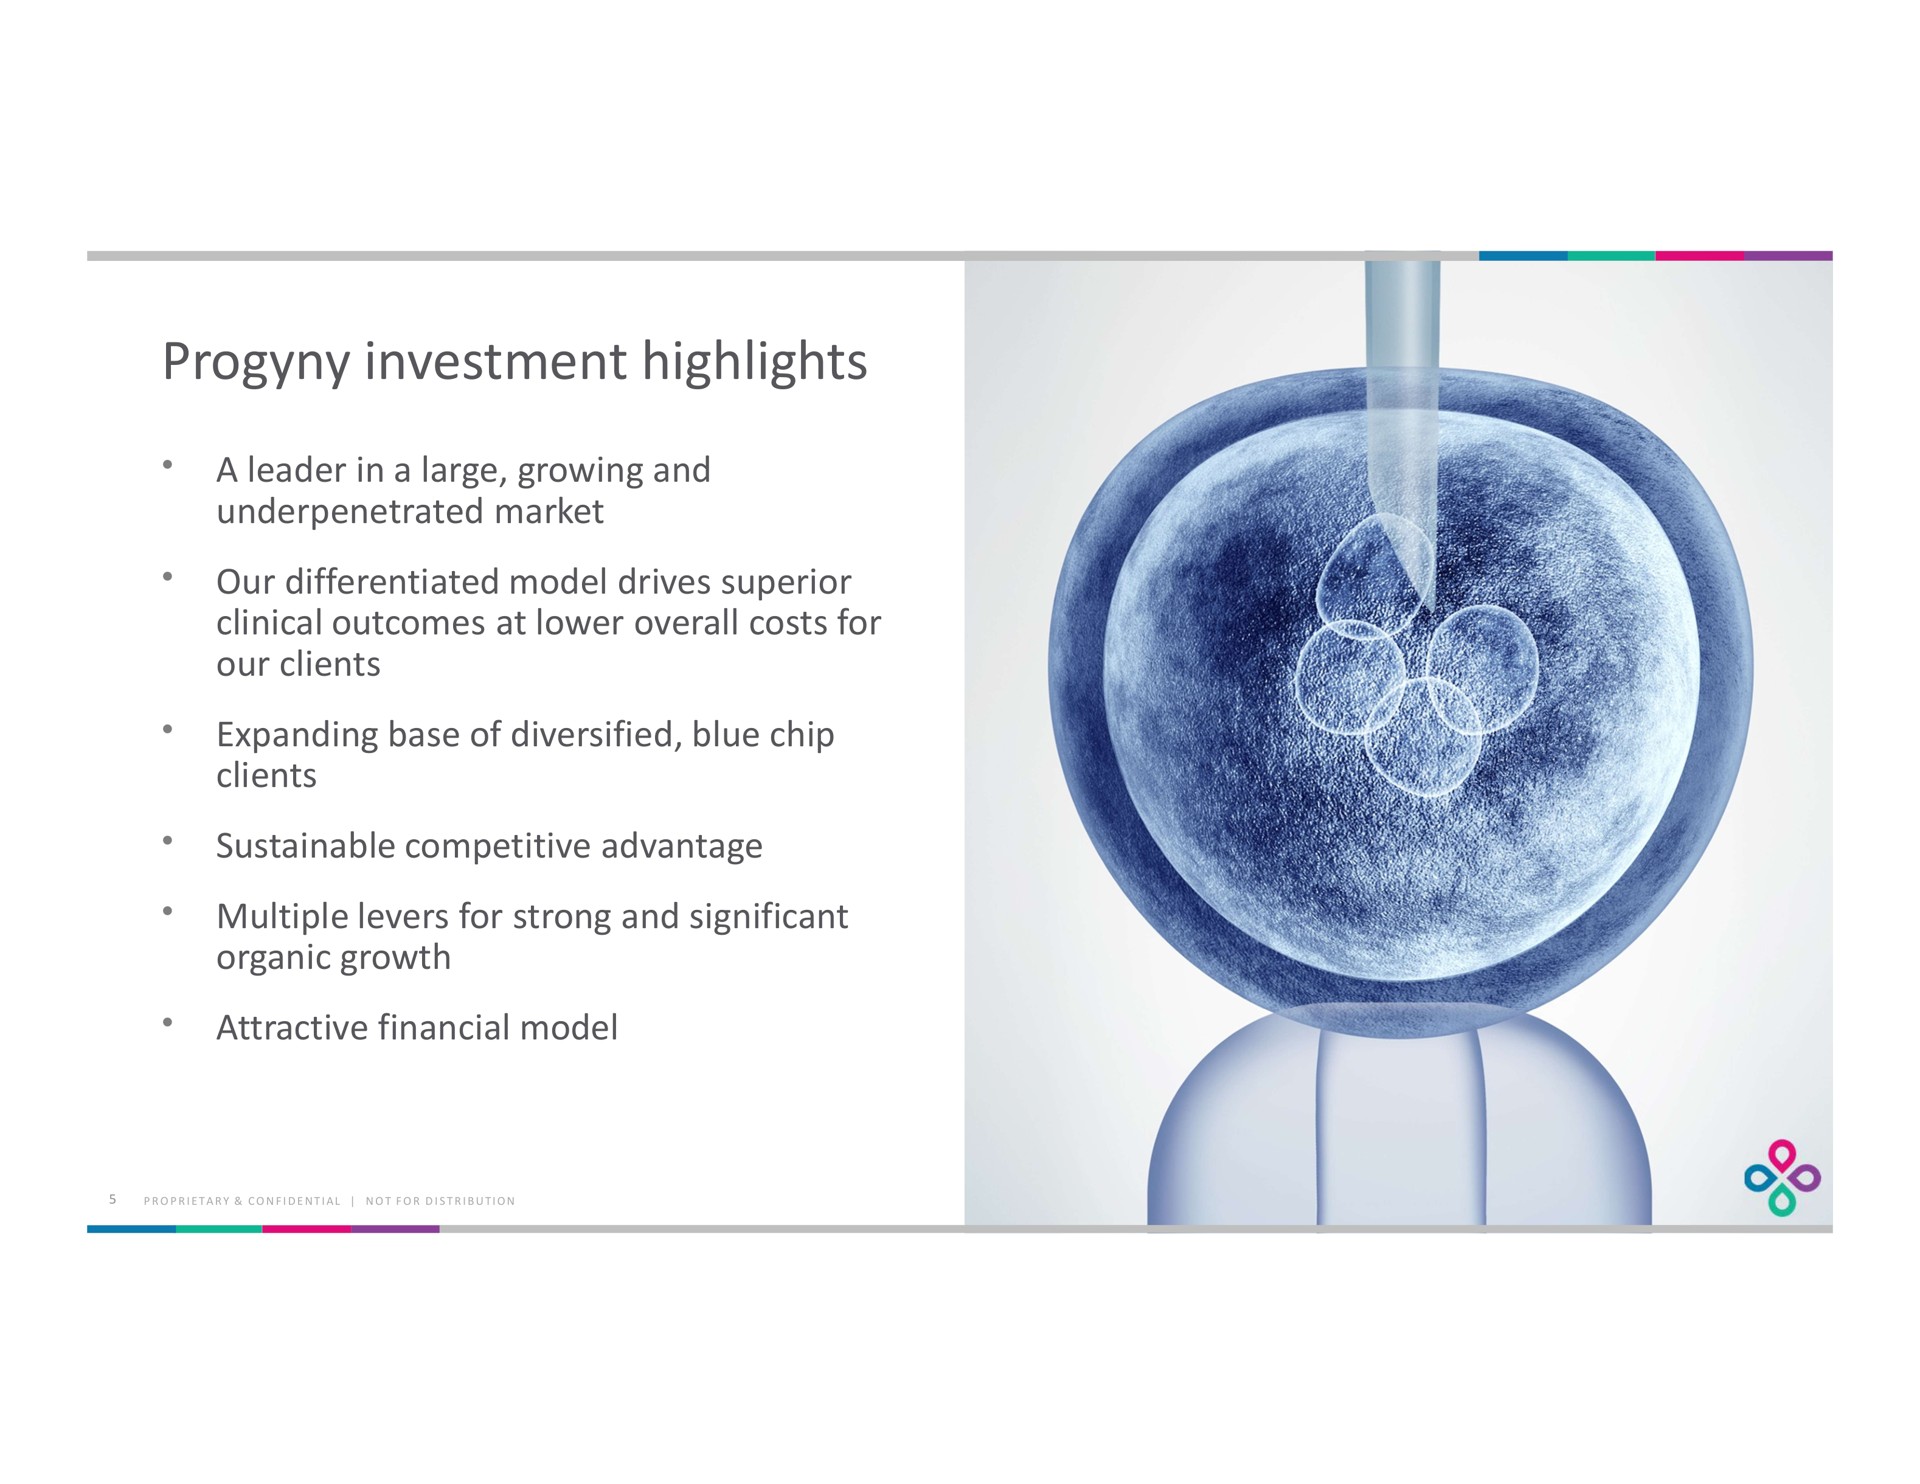 investment highlights | Progyny